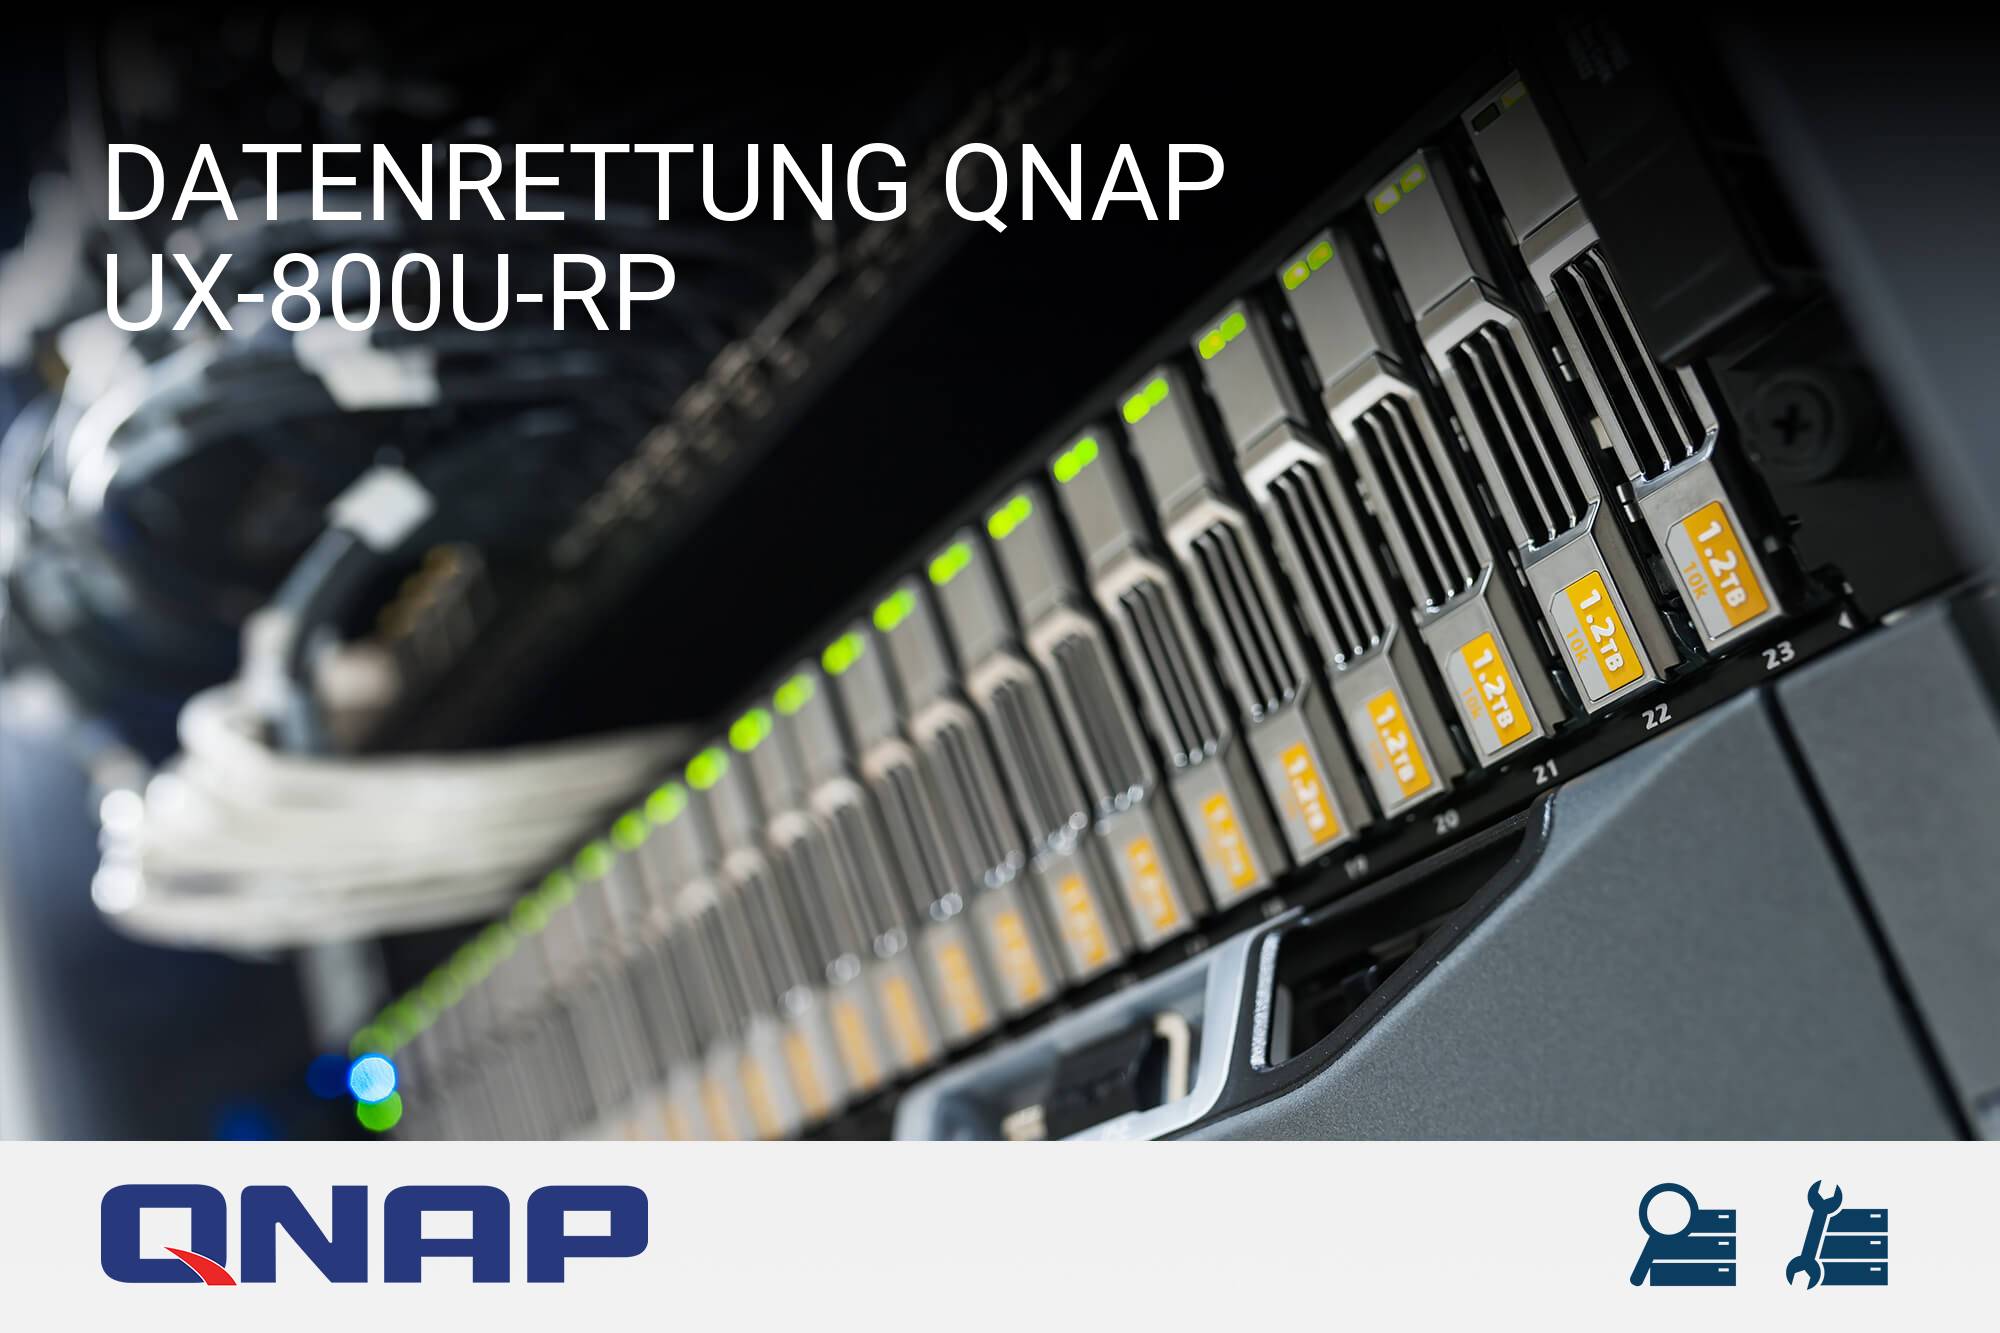 QNAP UX-800U-RP